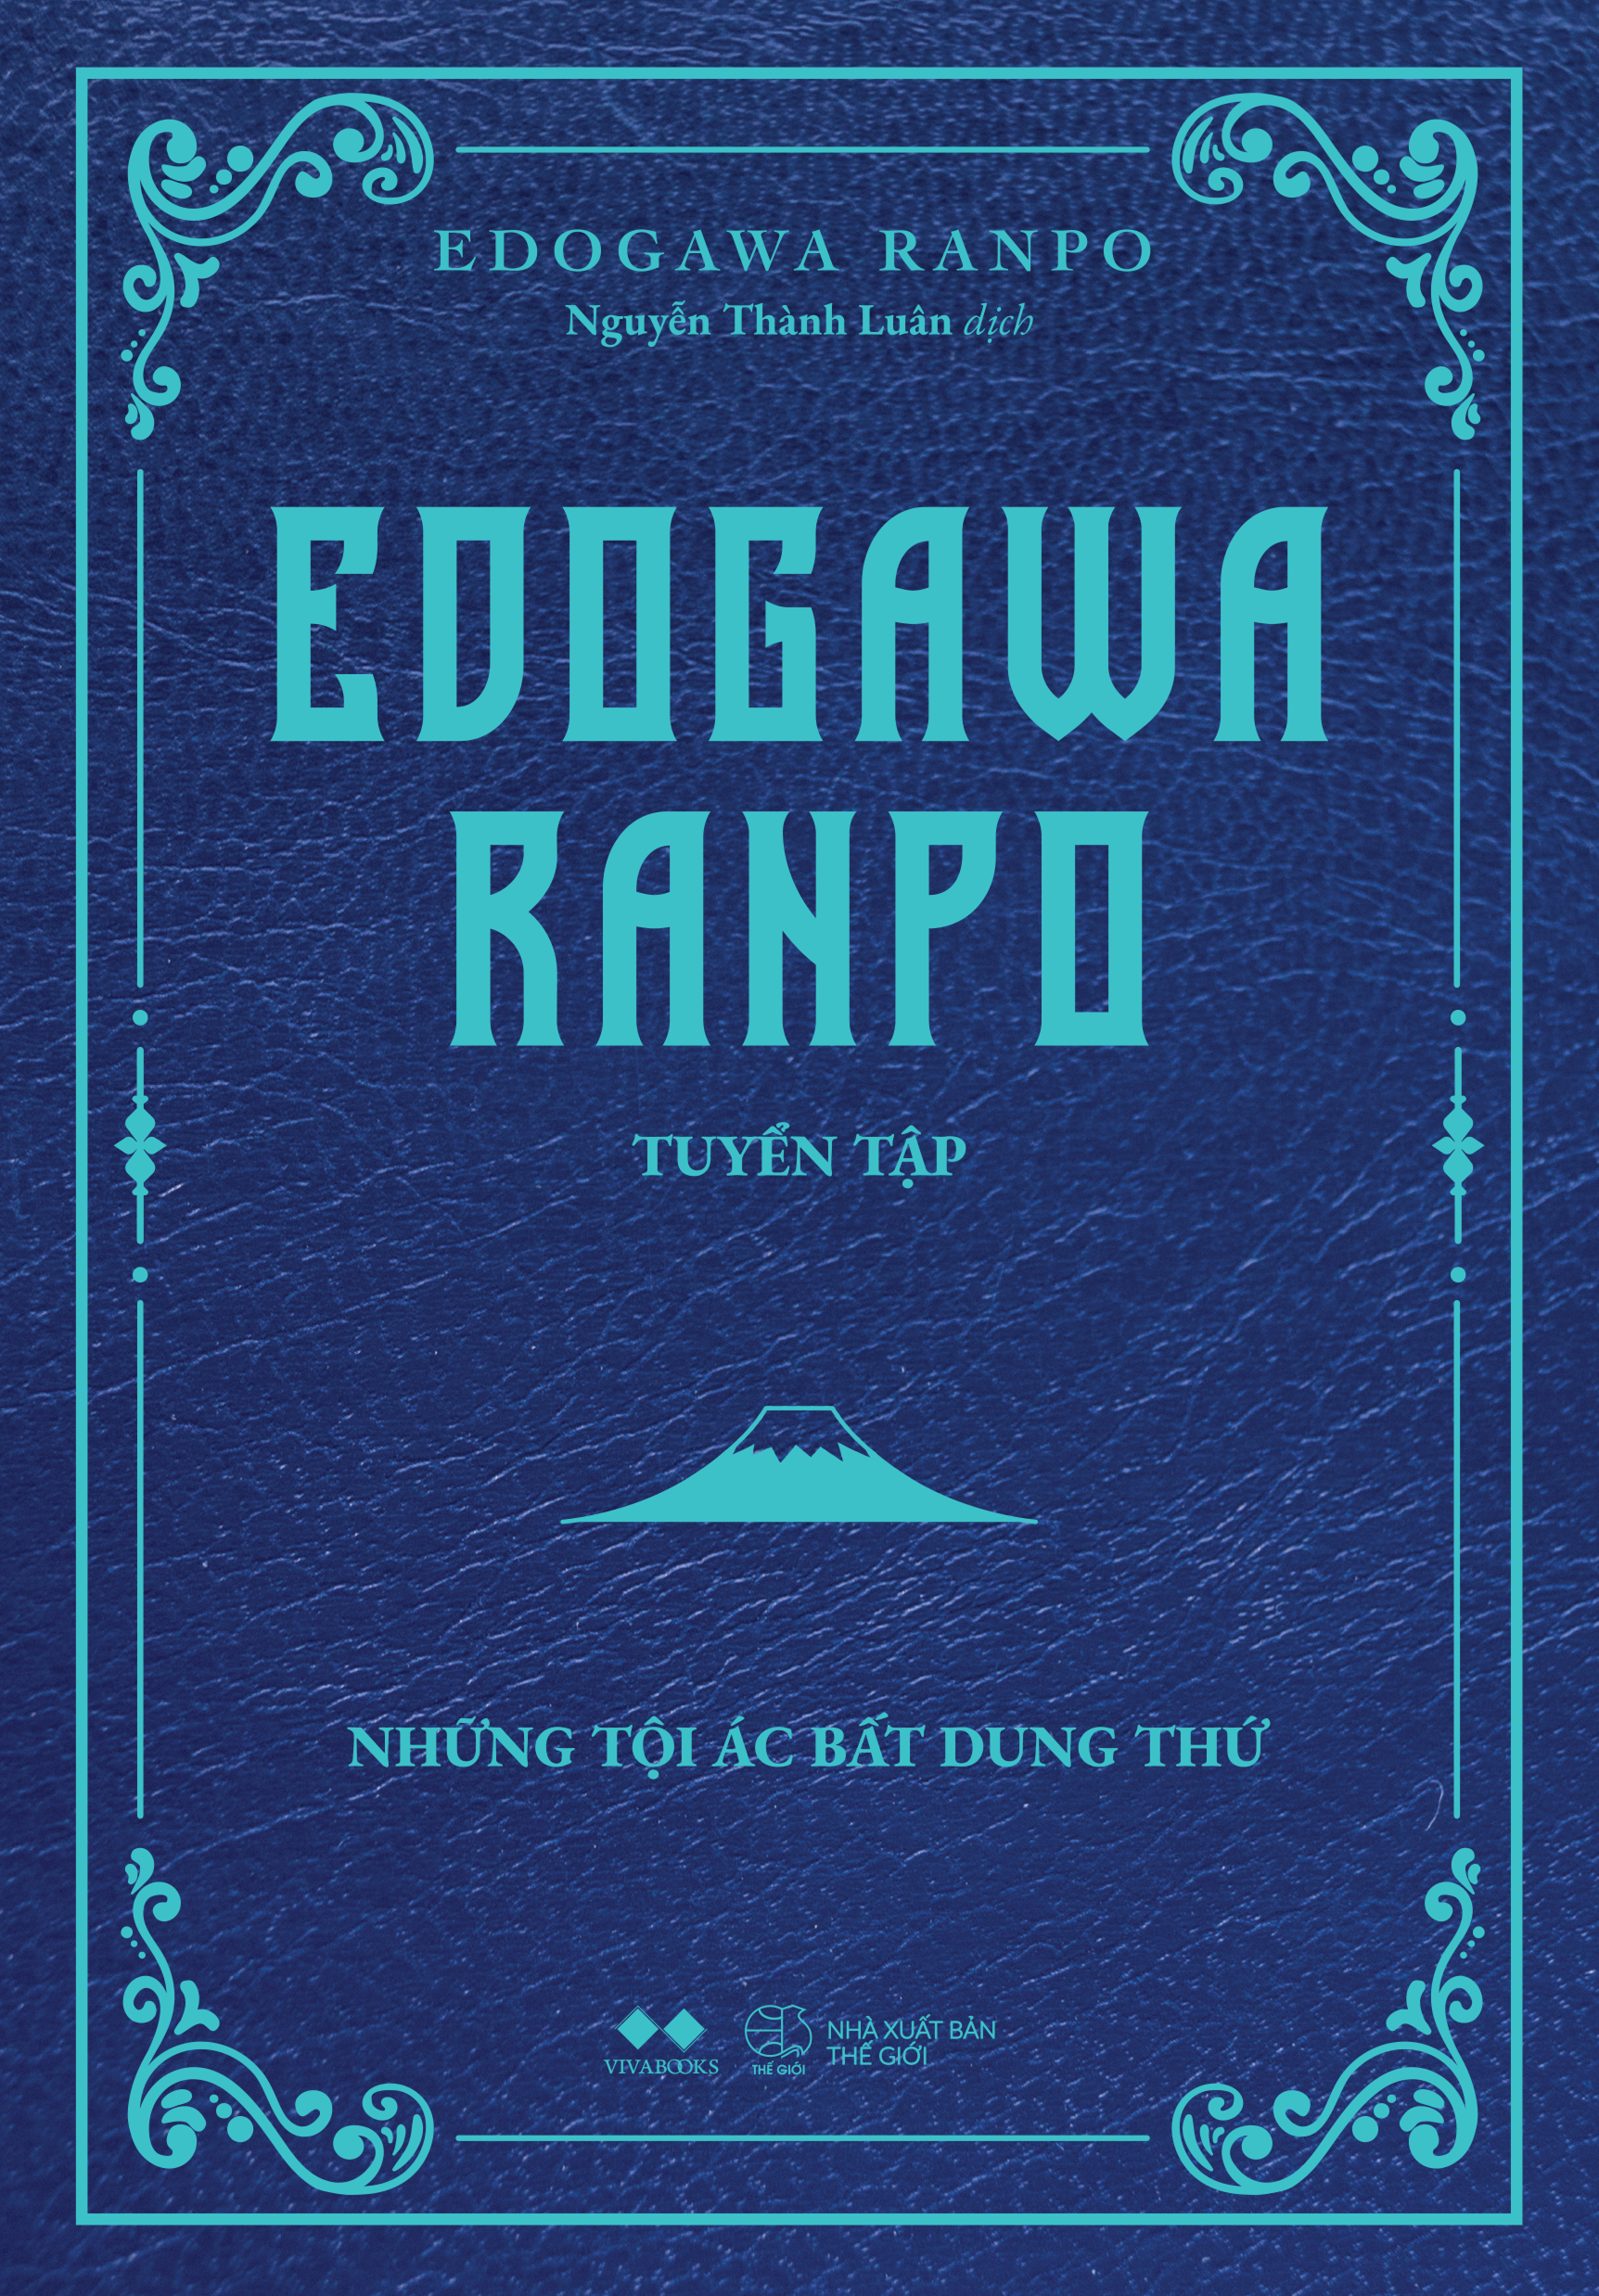 Combo 2 Cuốn Văn Học Hành Động Hay- Combo 2 Cuốn: Edogawa Ranpo Tuyển Tập- Những Câu Chuyện Bí Ẩn Và Ly Kỳ Nhất+Những Tội Ác Bất Dung Thứ